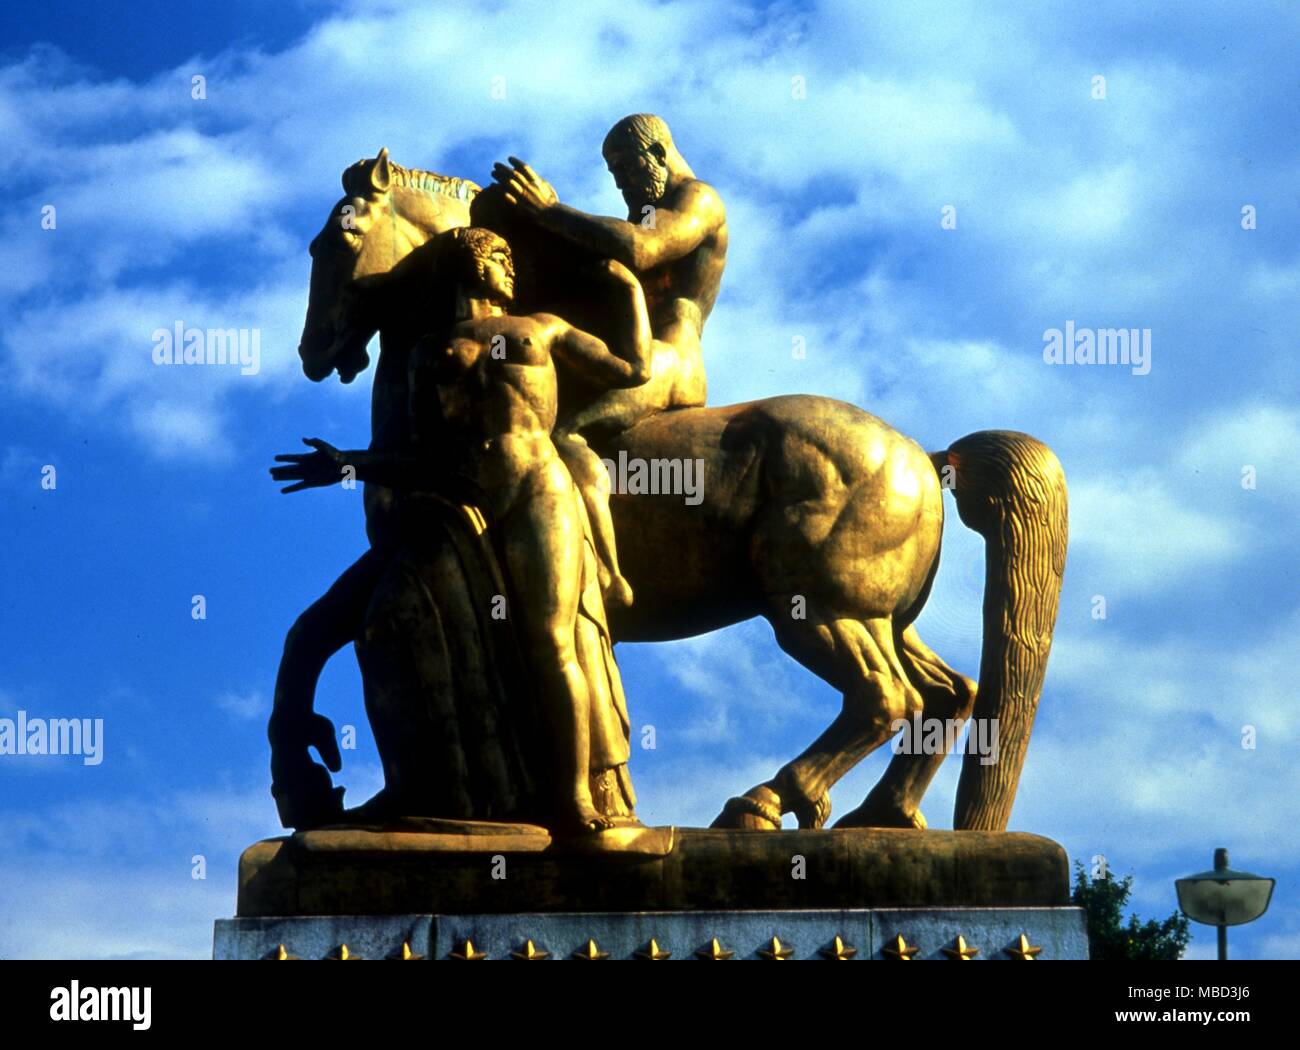 Symbol - Manpower. Skulptur "Die Kunst des Krieges" von J. E. Fraser. 1925 steht am Eingang zum Rock Creek Parkway, Washington DC. USA. Mars ist reiten das Pferd und symbolisiert der Nation Manpower. Stockfoto